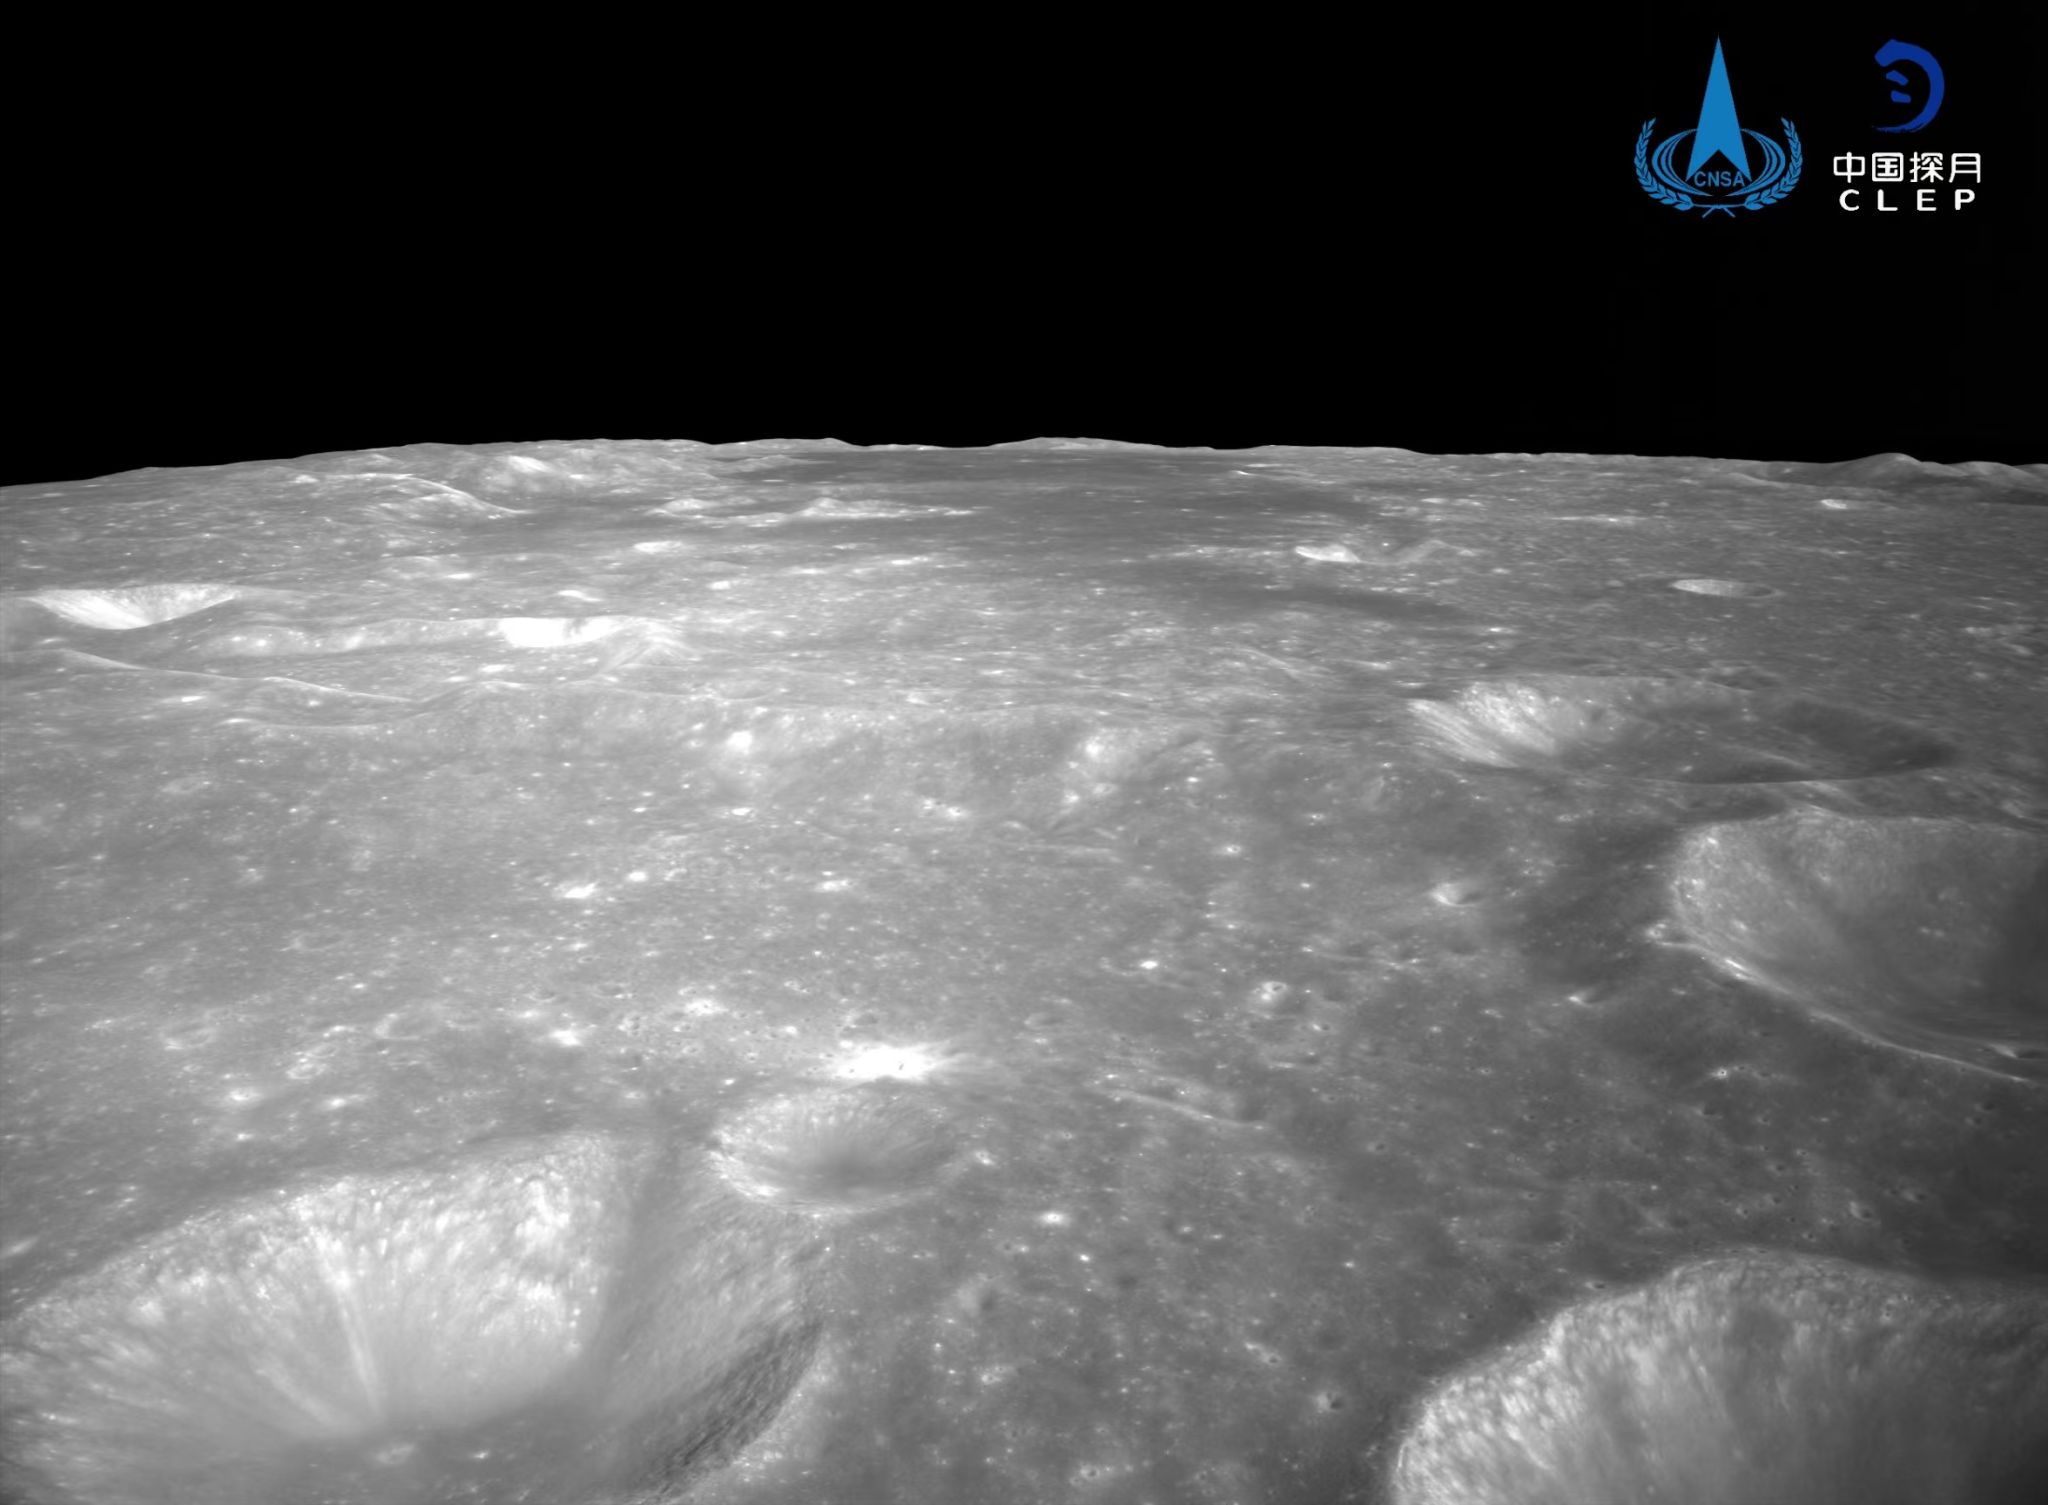 Грунт с обратной стороны Луны впервые в истории доставили на Землю